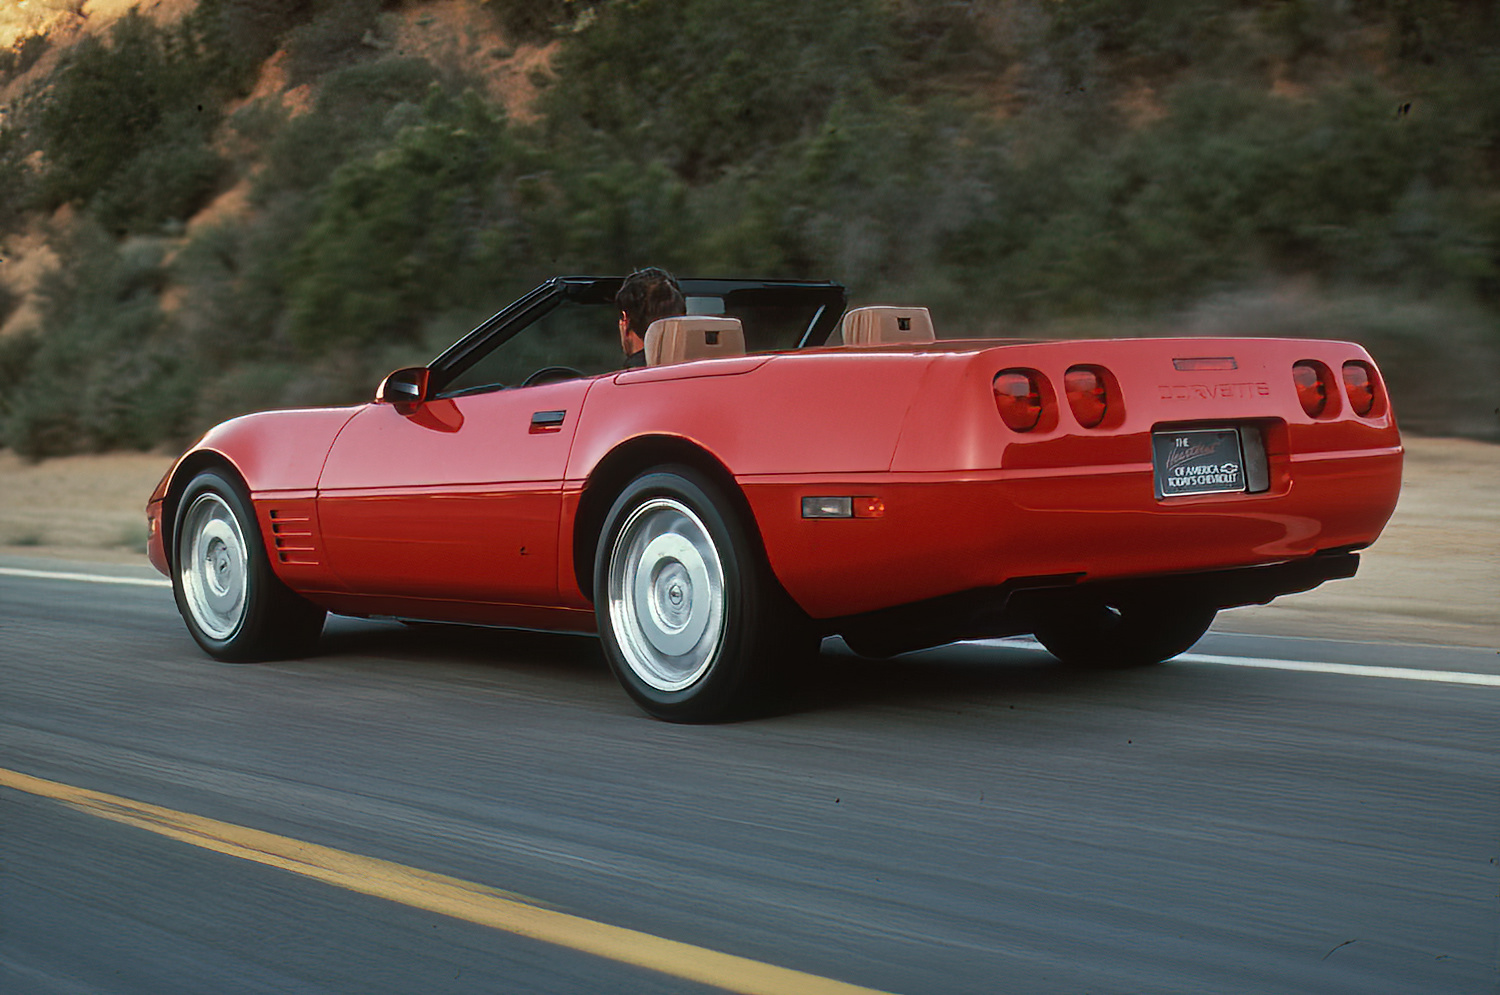 1992 Corvette C4 Convertible in Bright Red